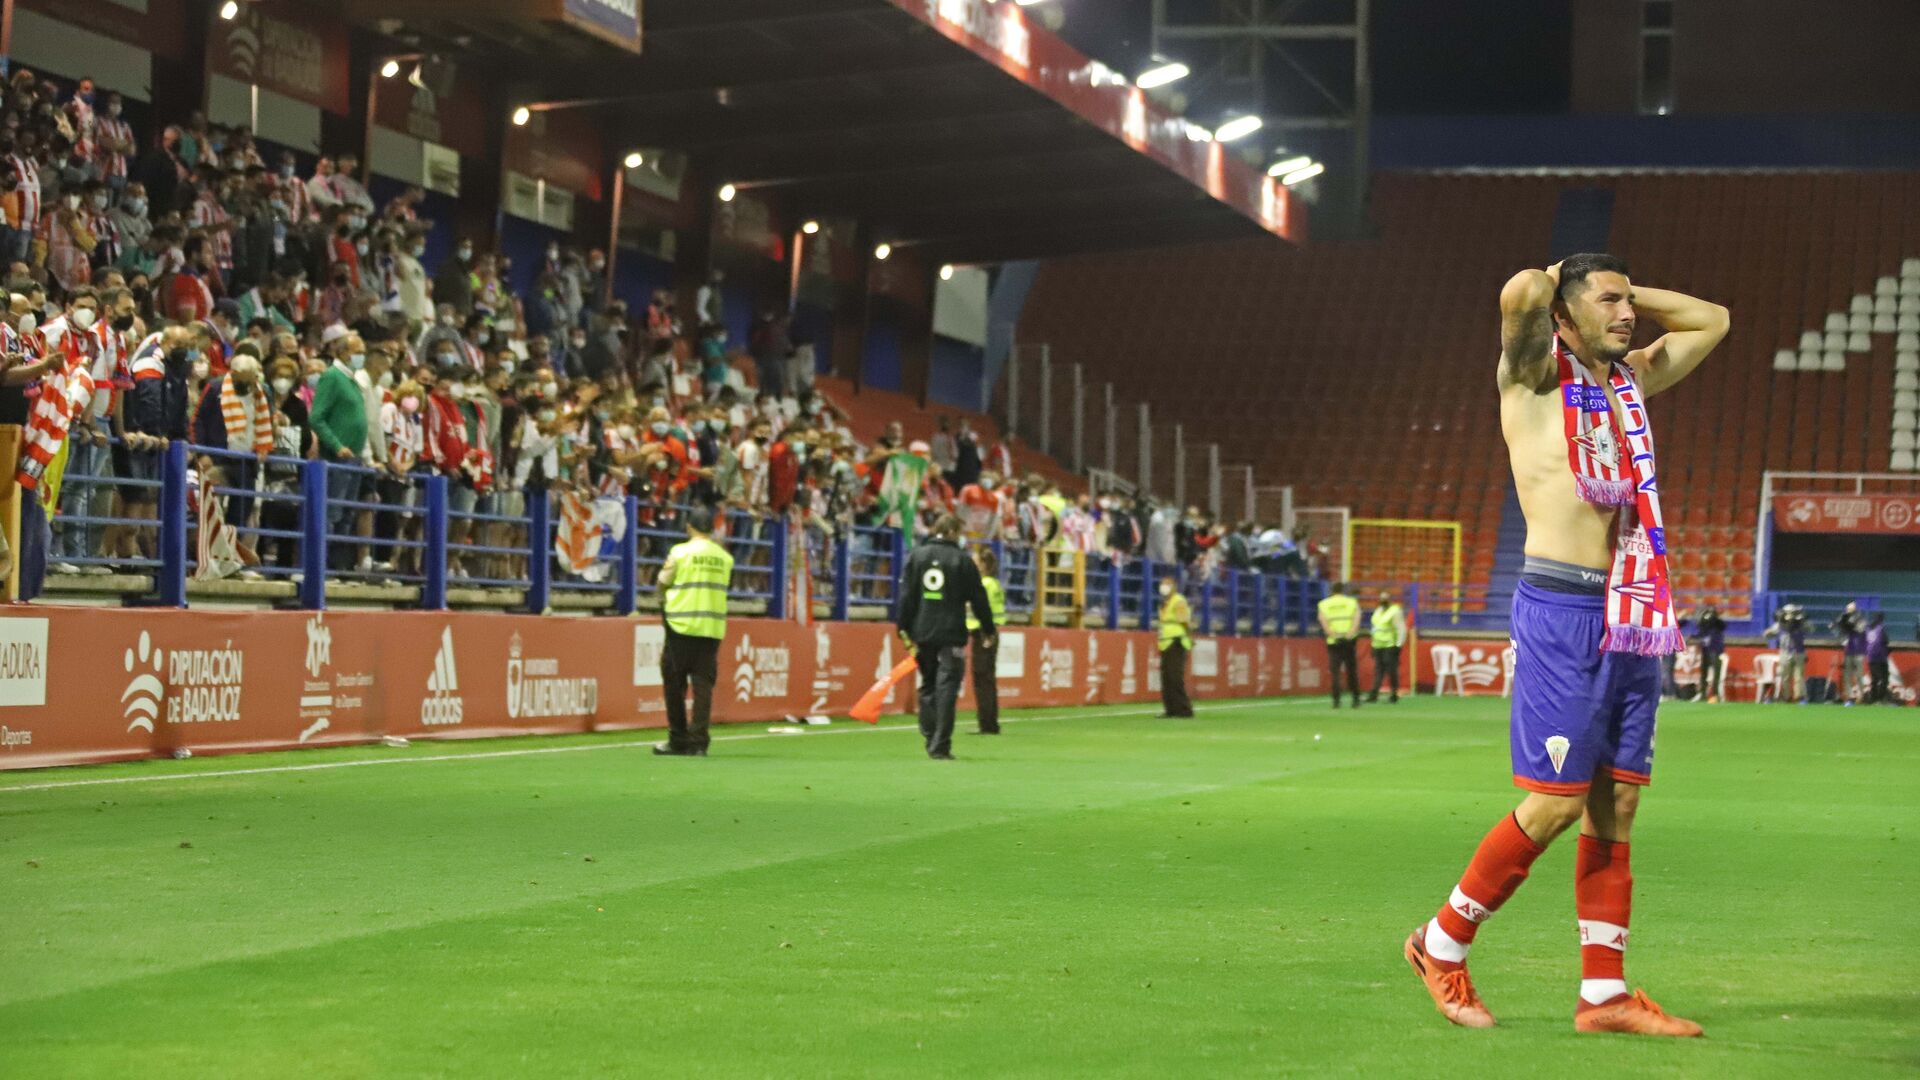 Las mejores fotos del Real Sociedad B - Algeciras CF